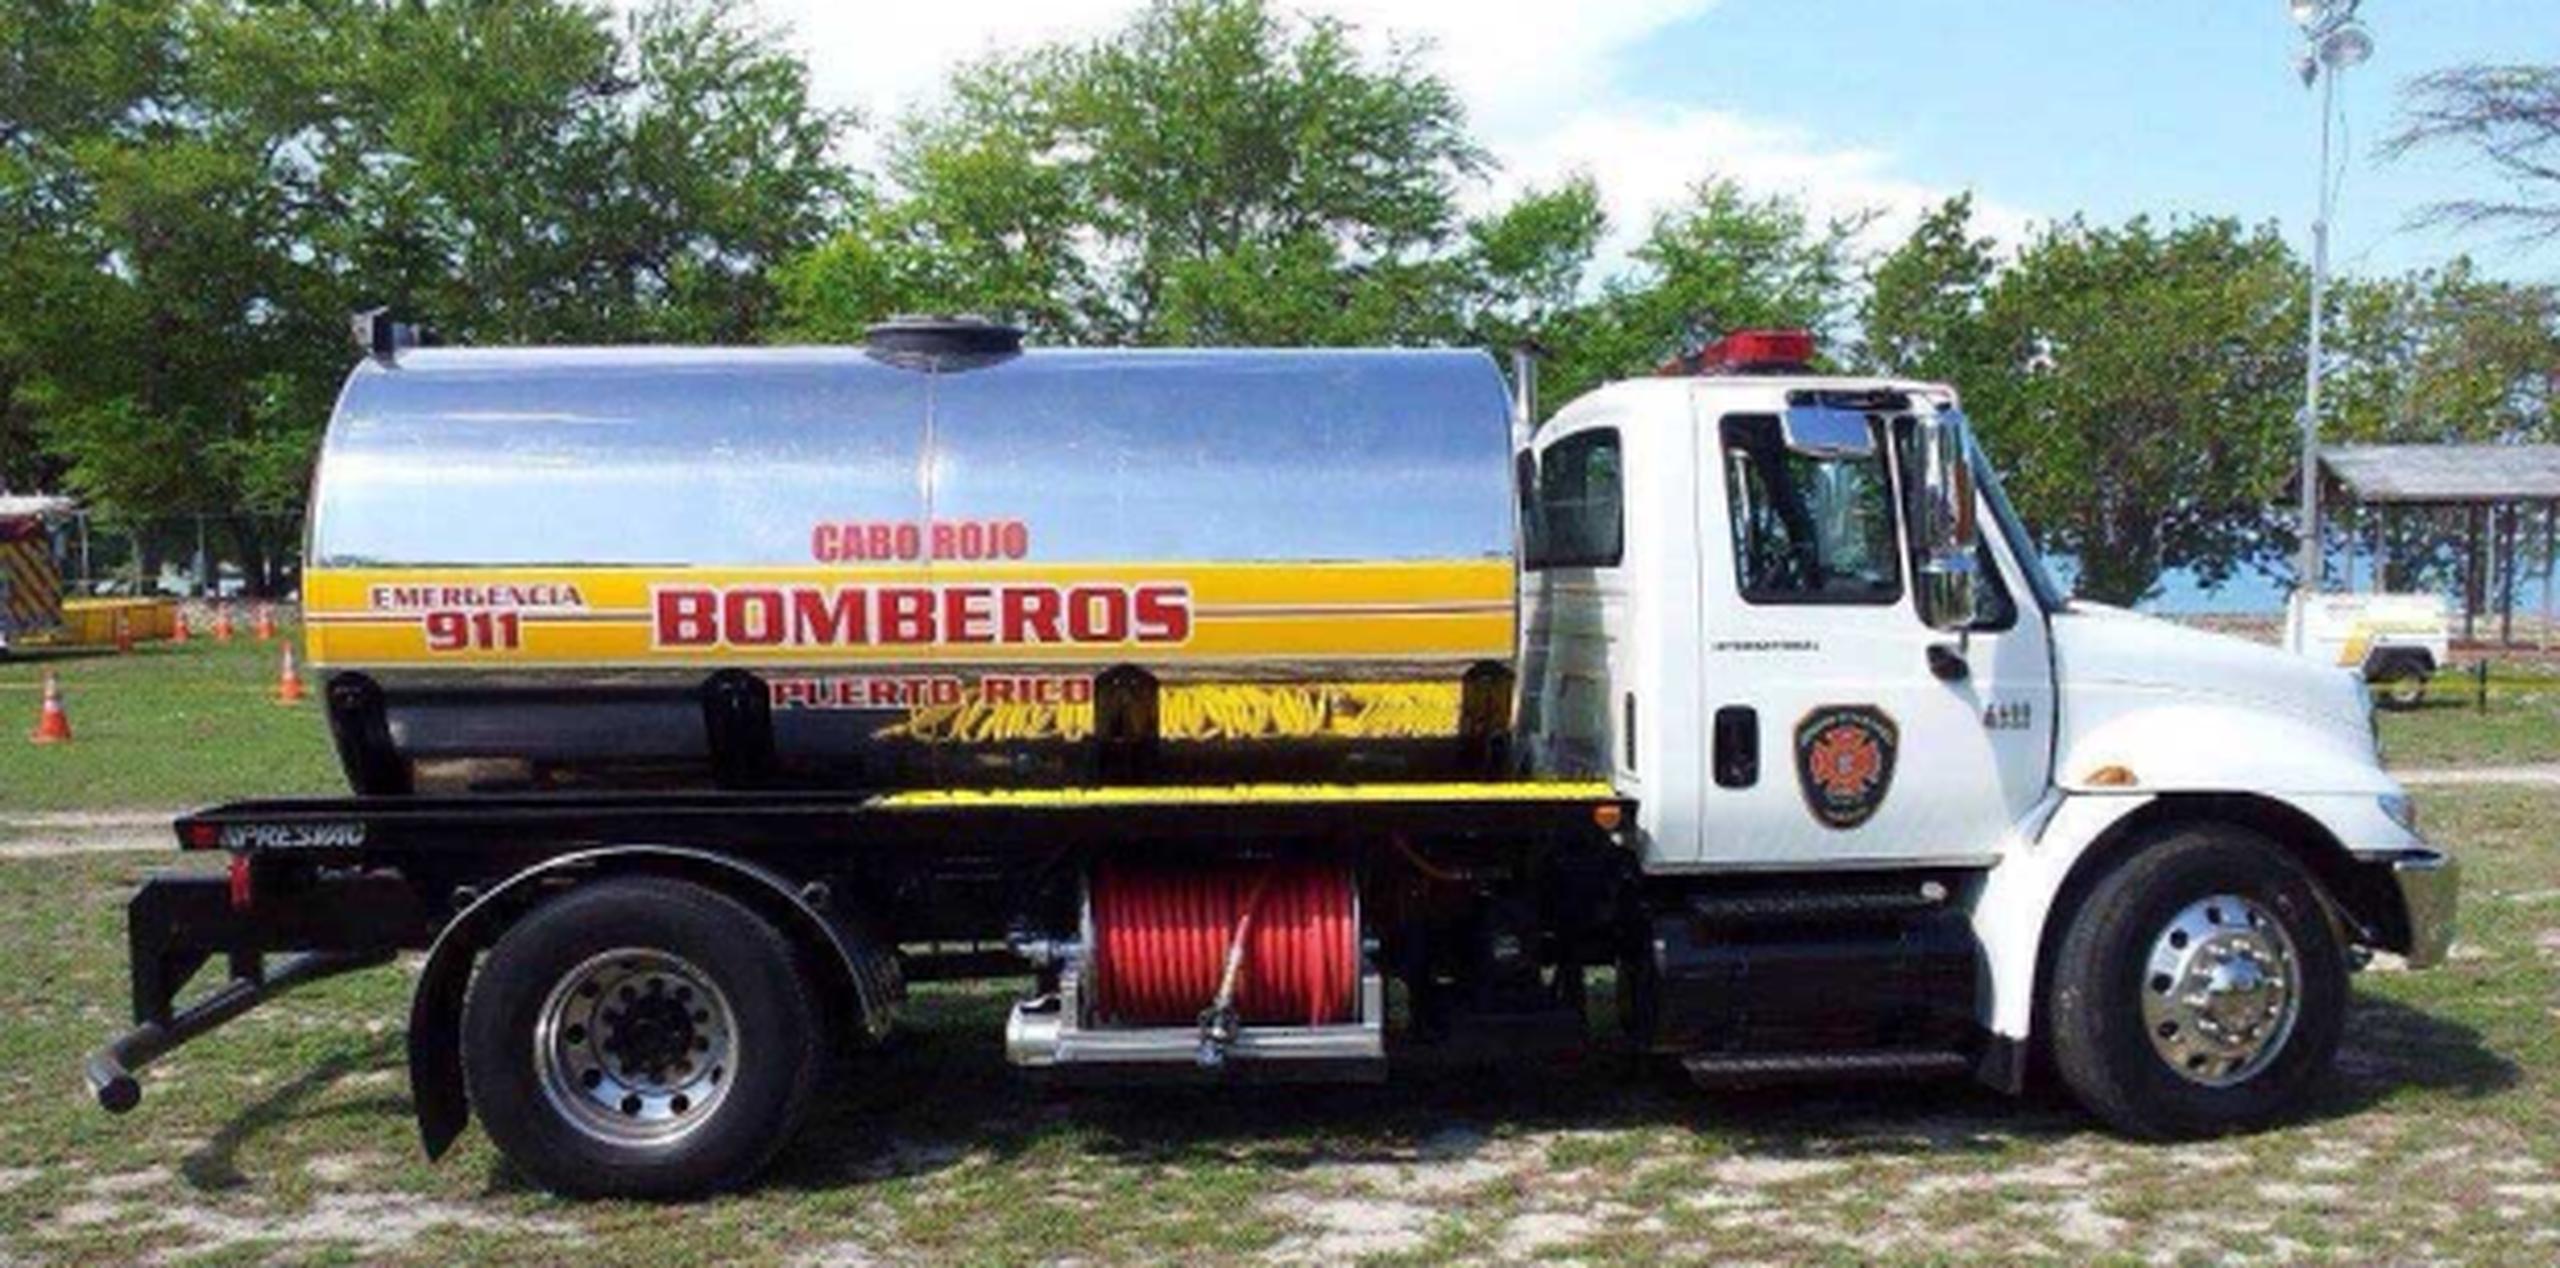 El camión, fotografiado antes del accidente, fue reasignado de la zona de Cabo Rojo al distrito de Fajardo. (Suministrada)